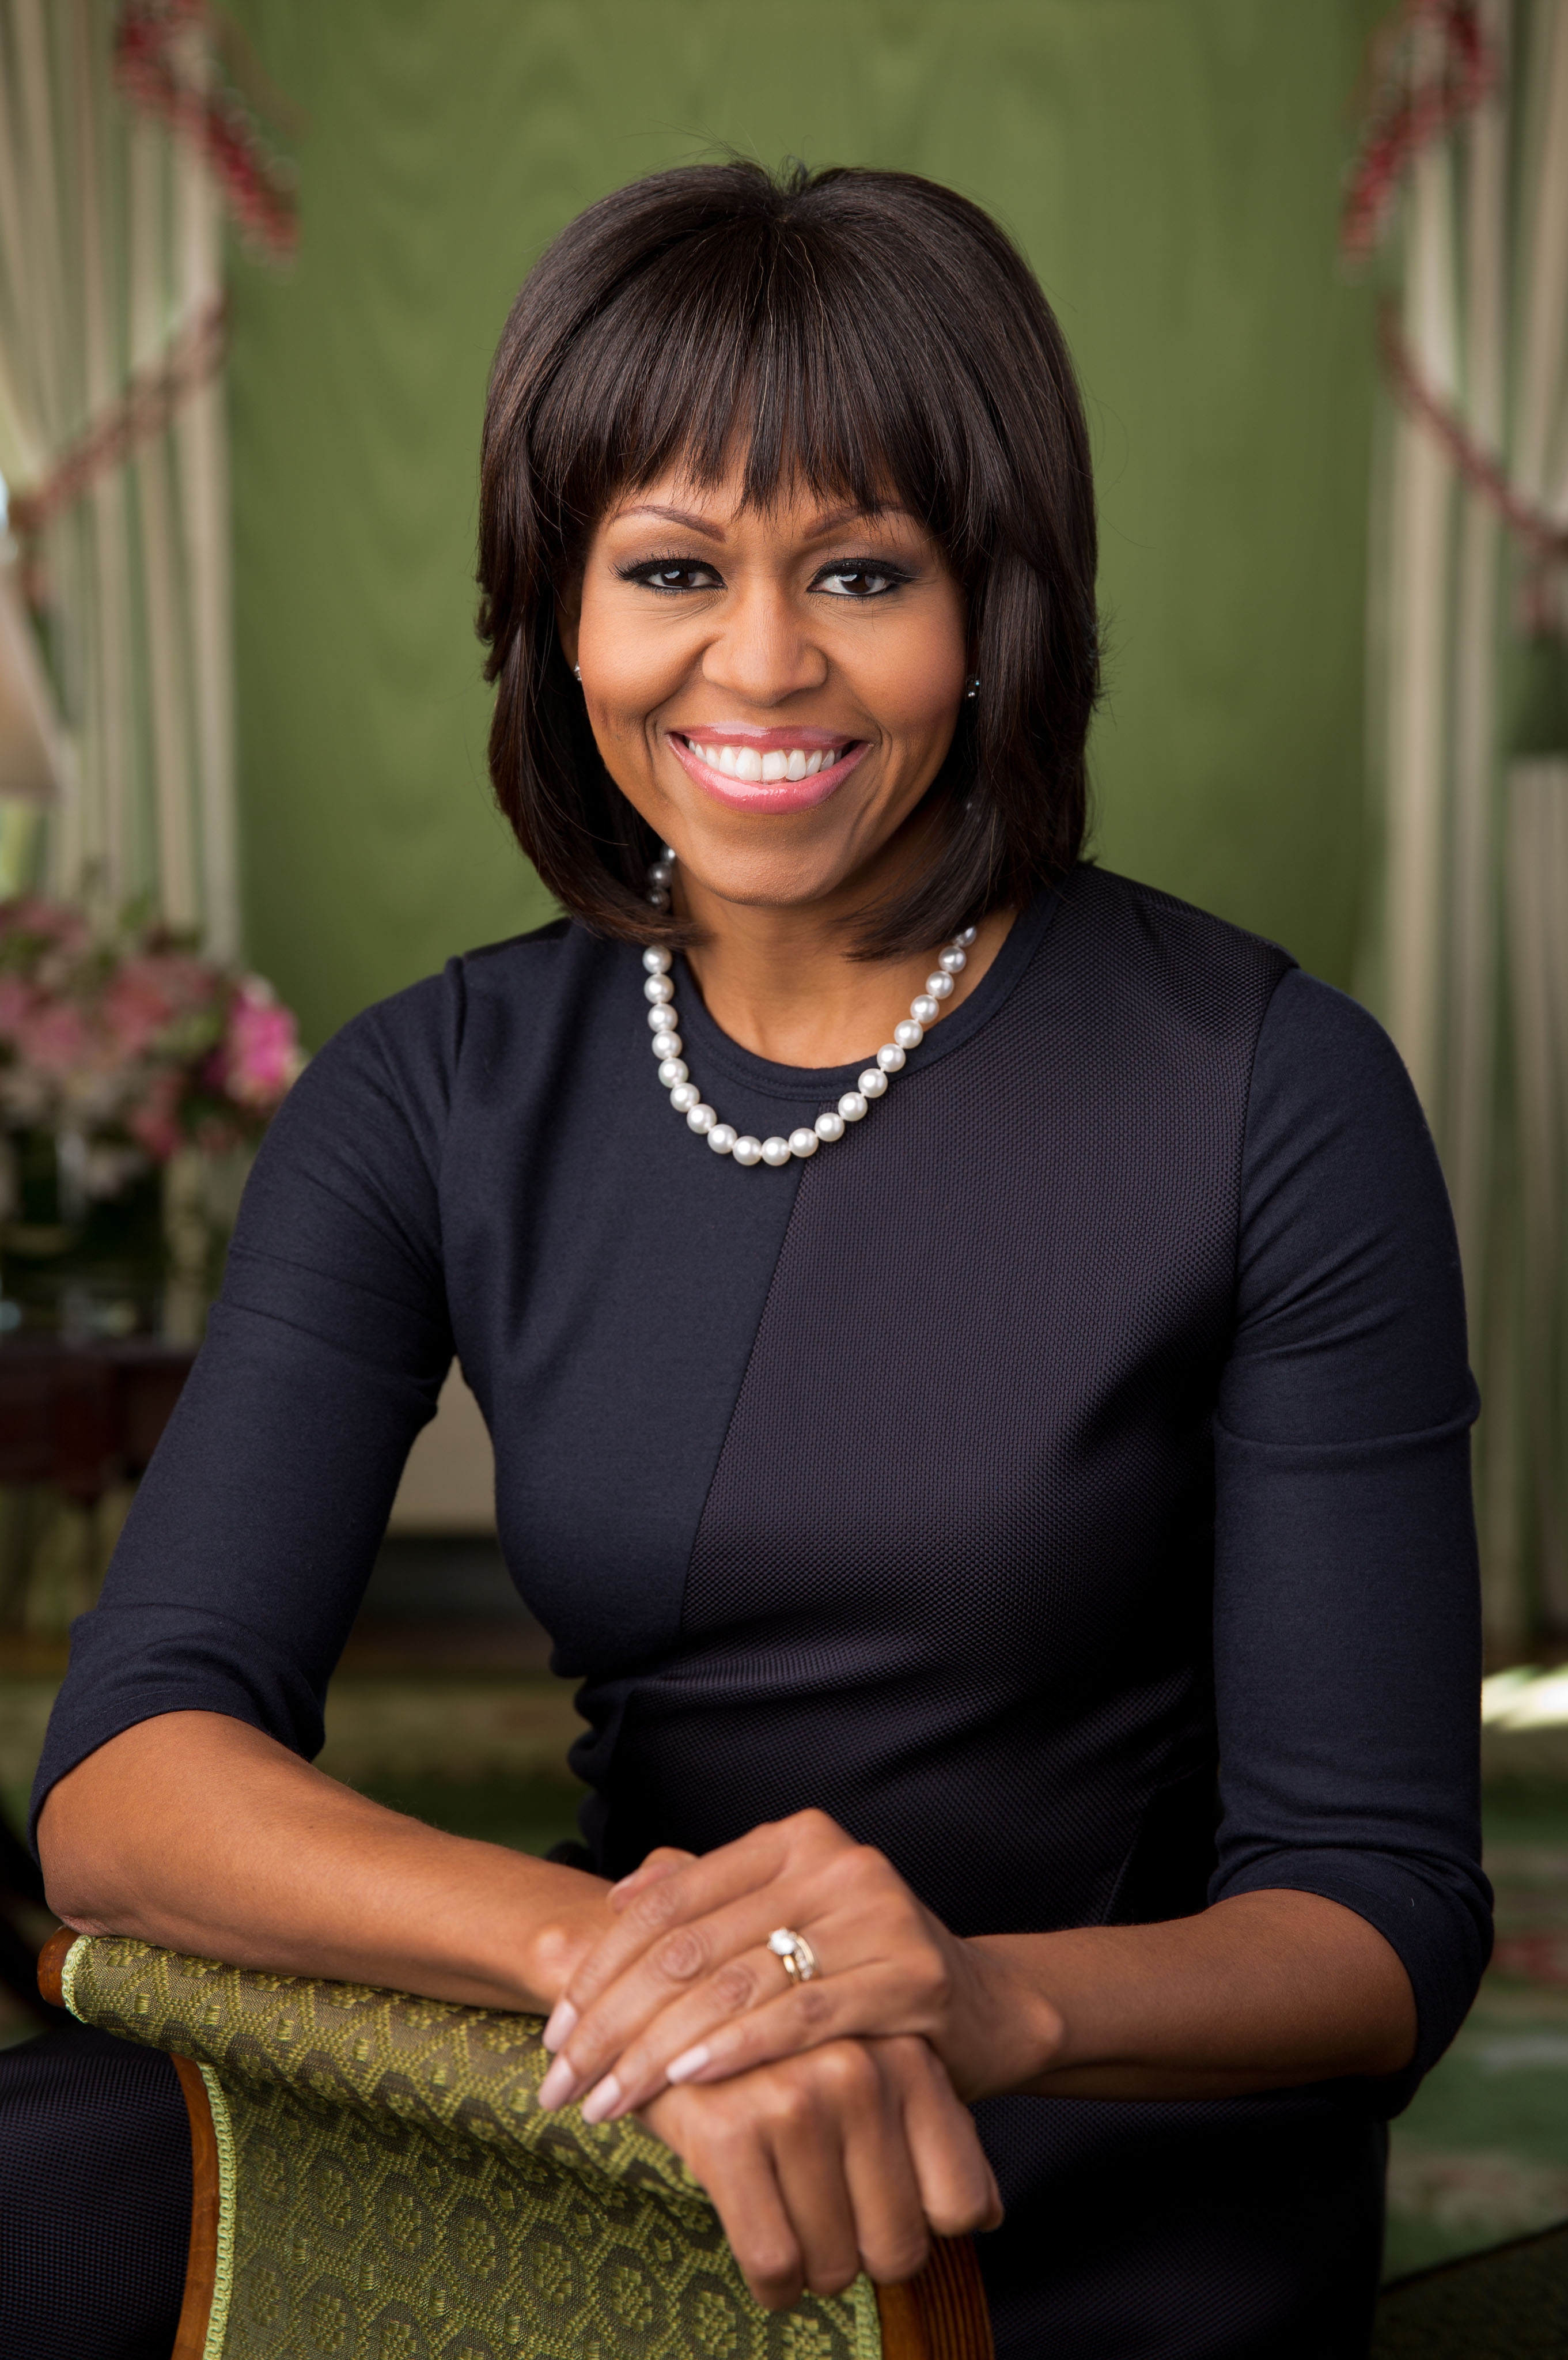 auteur Michelle Obama de la citation À l'heure actuelle, quand nous entendons tellement de rhétorique dérangeante et haineuse, il est si important de se rappeler que notre diversité a été - et sera toujours - notre plus grande source de force et de fierté ici aux États-Unis.